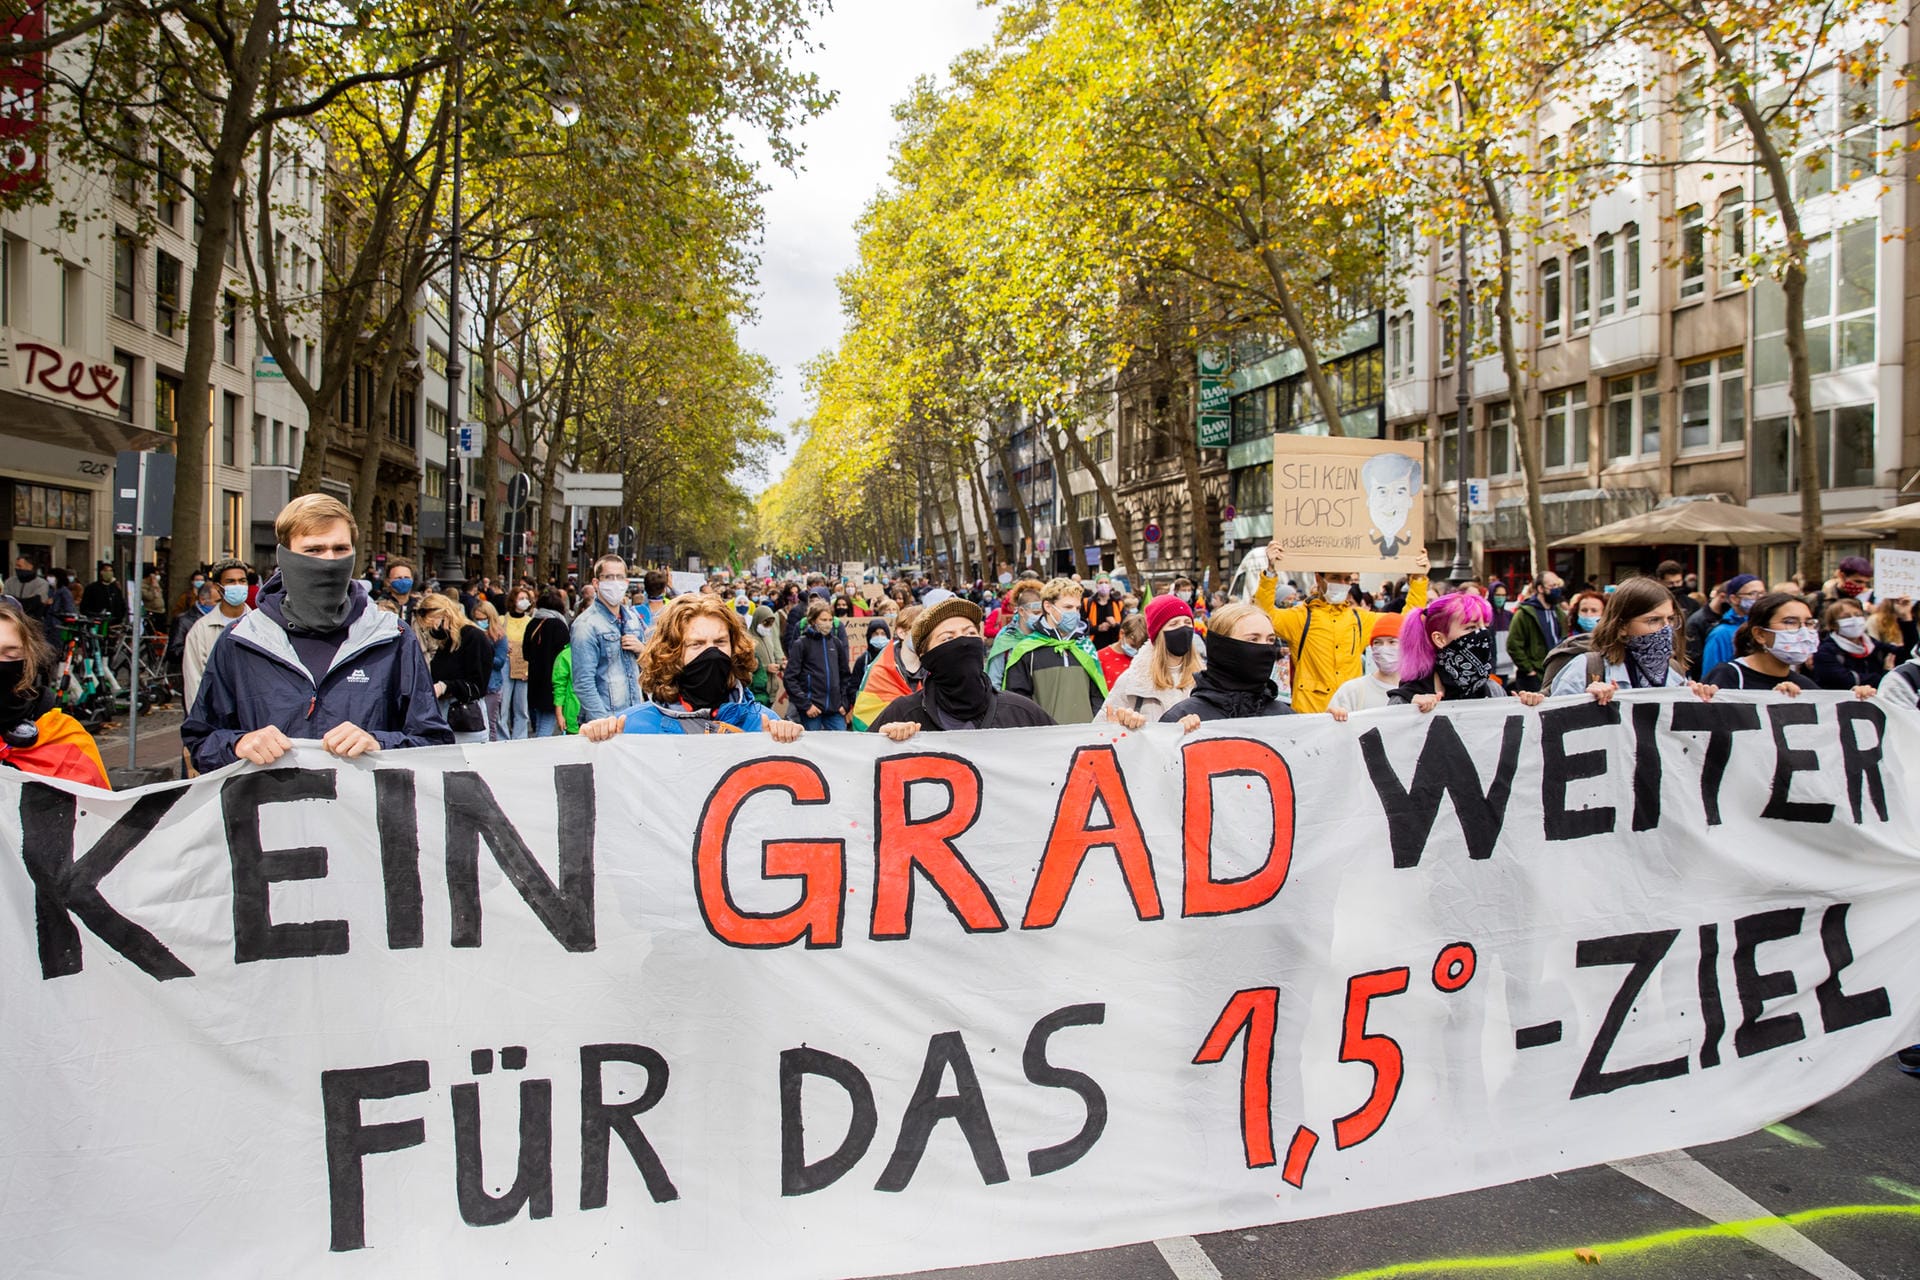 Köln: Aktivisten versammeln sich beim sechsten globalen Klimastreik von Fridays for Future (FFF) und halten ein Banner mit der Aufschrift "Kein Grad weiter für das 1,5 Grad-Ziel".